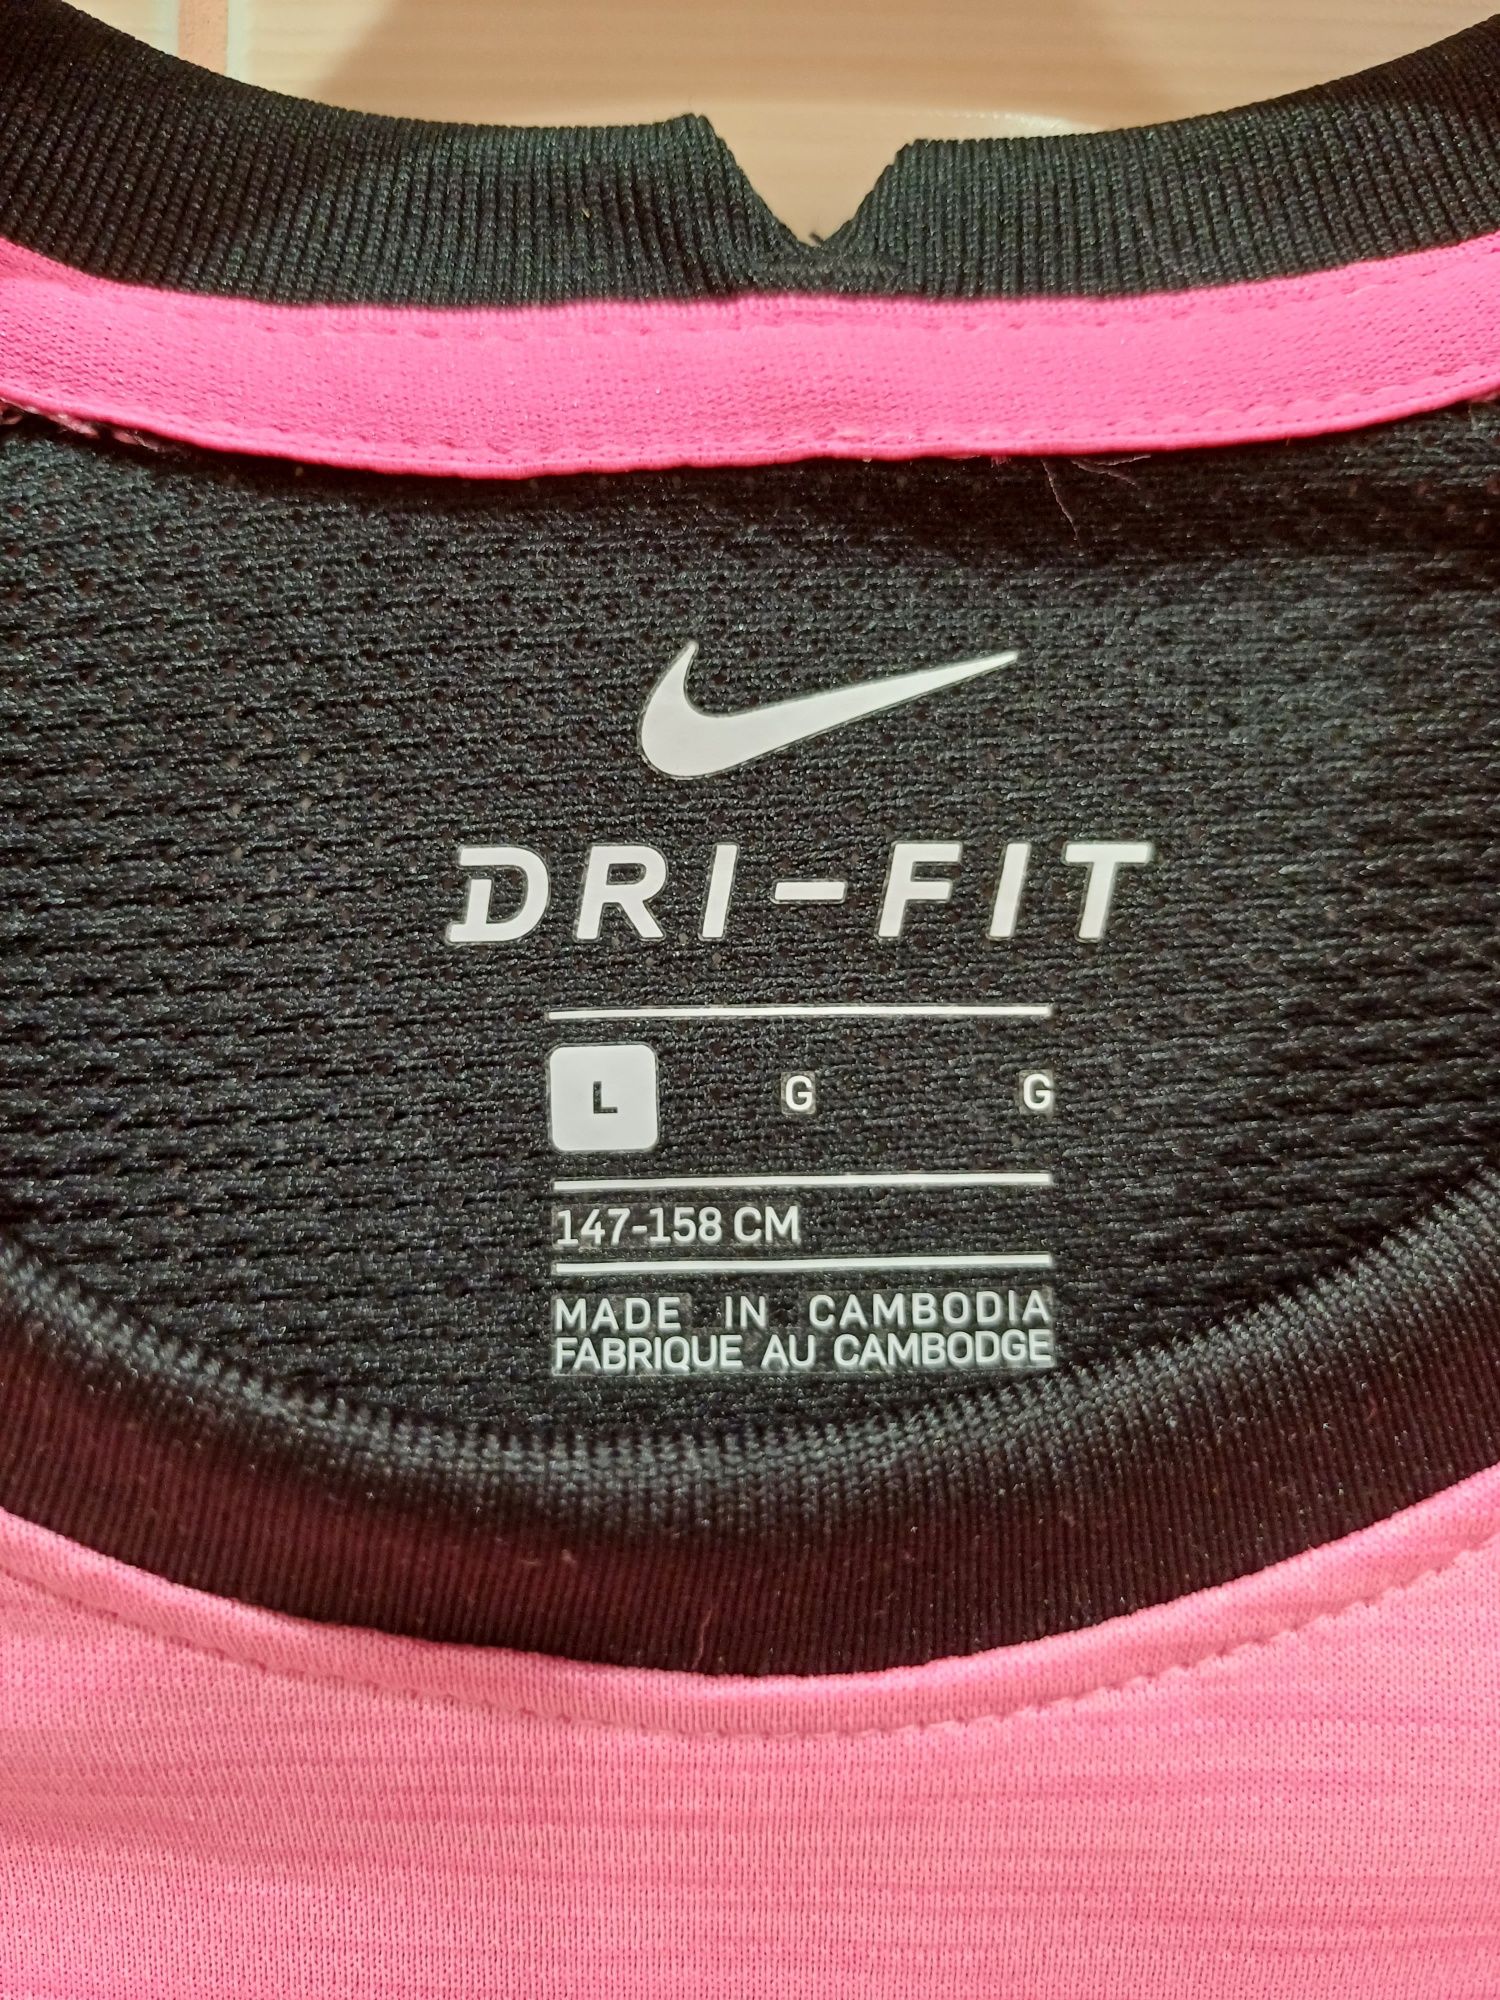 Футболка женская Nike dri-fit